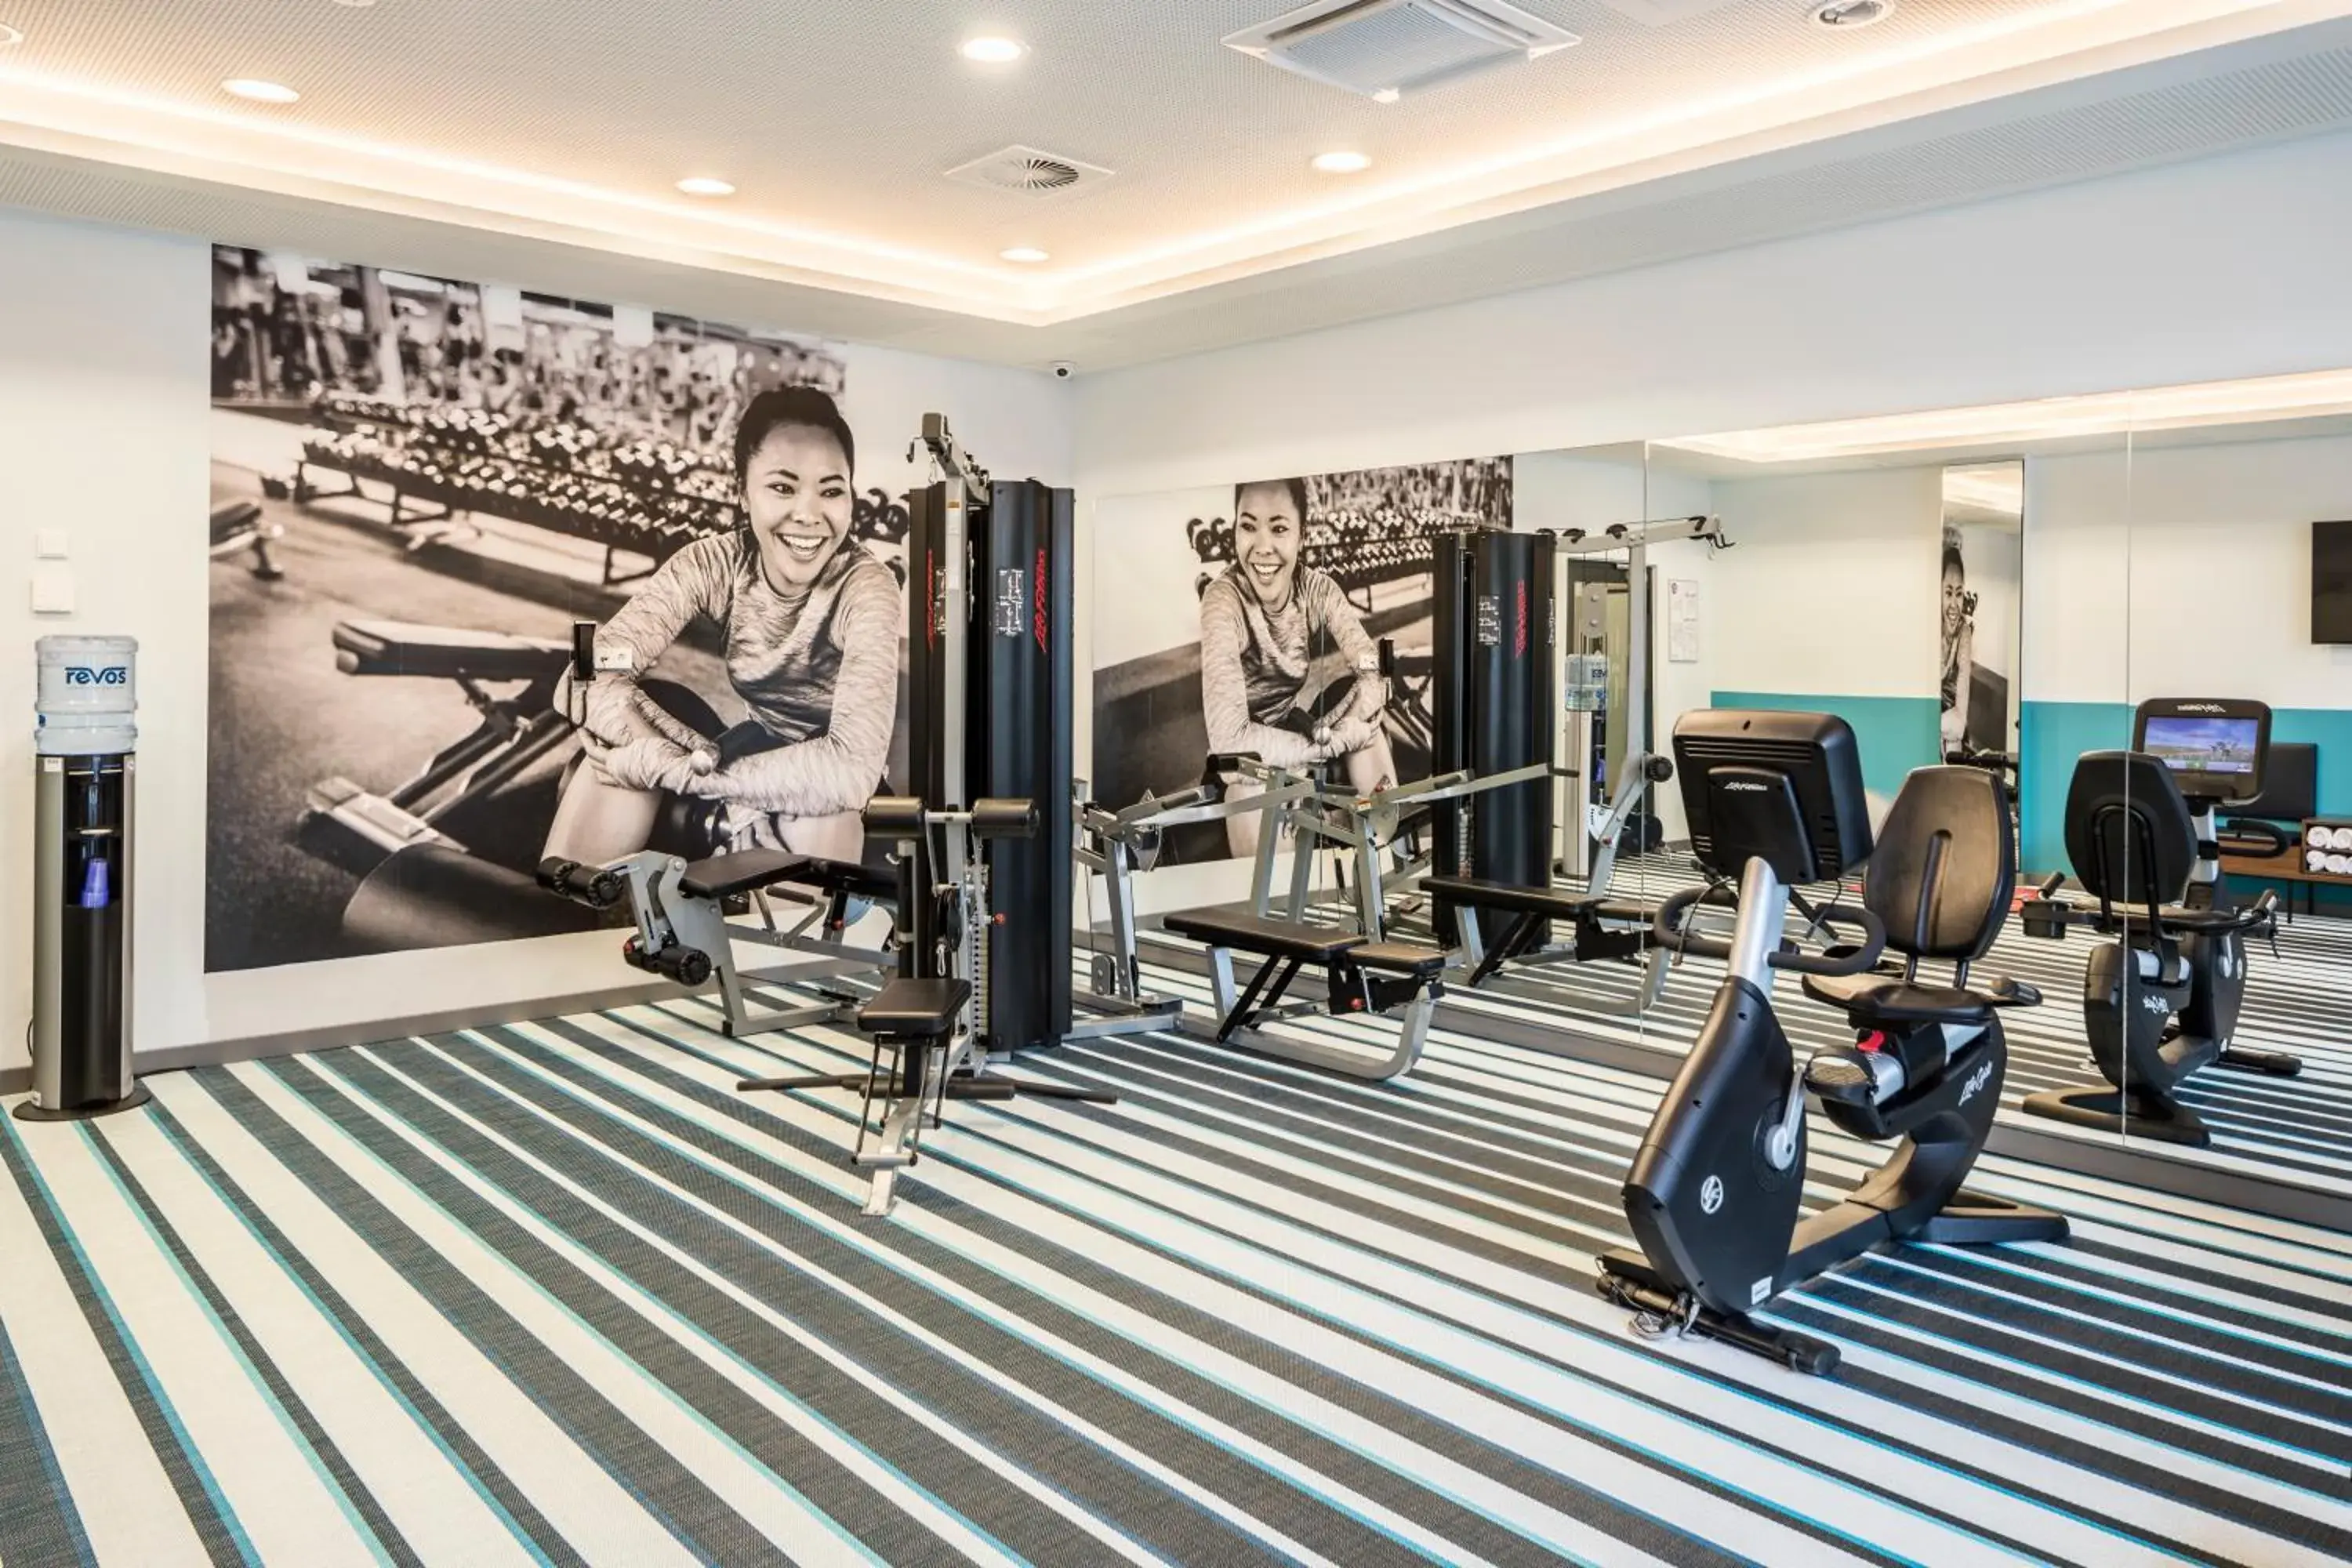 Fitness centre/facilities, Fitness Center/Facilities in Capri by Fraser, Frankfurt